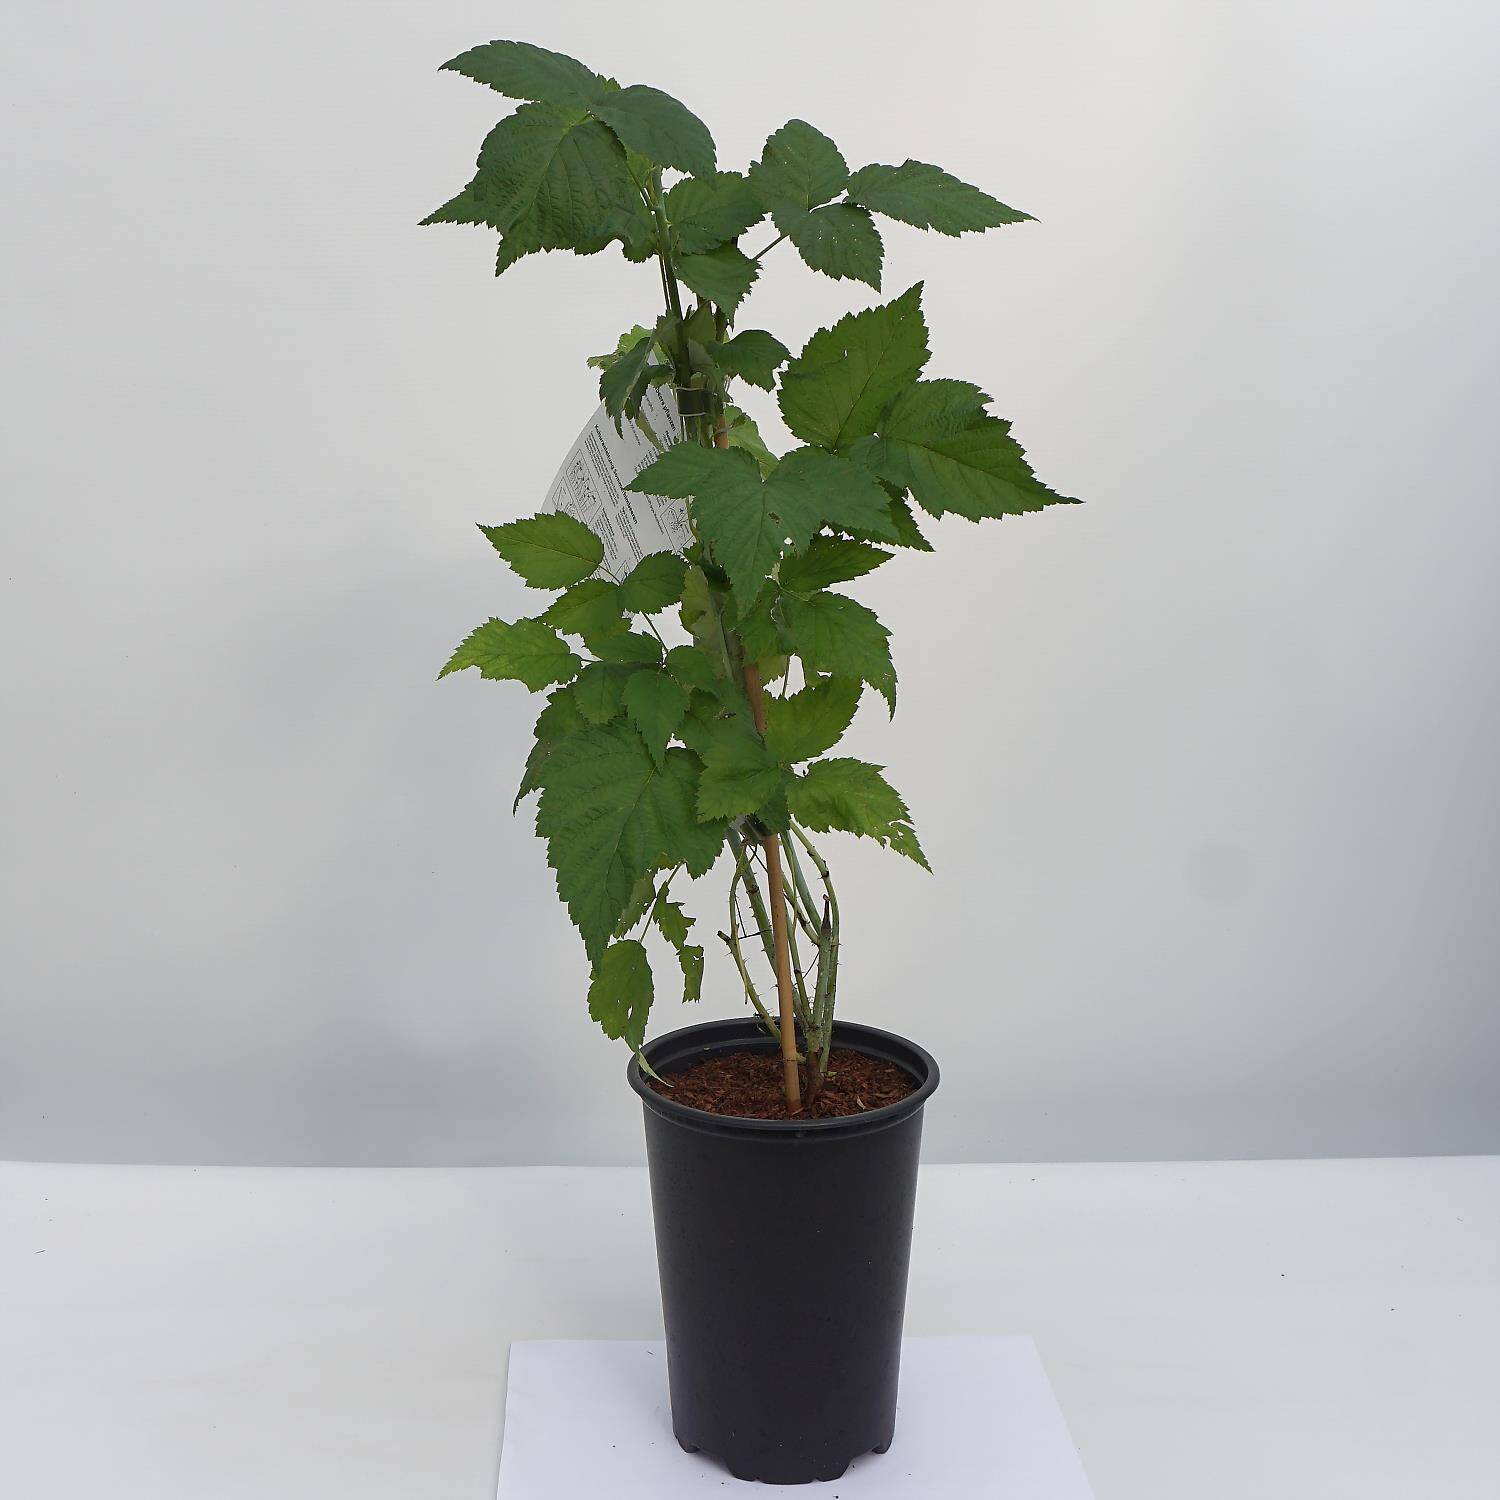 Kategorie <b>Obst </b> - Himbeere 'Black Jewel' - Rubus idaeus 'Black Jewel'